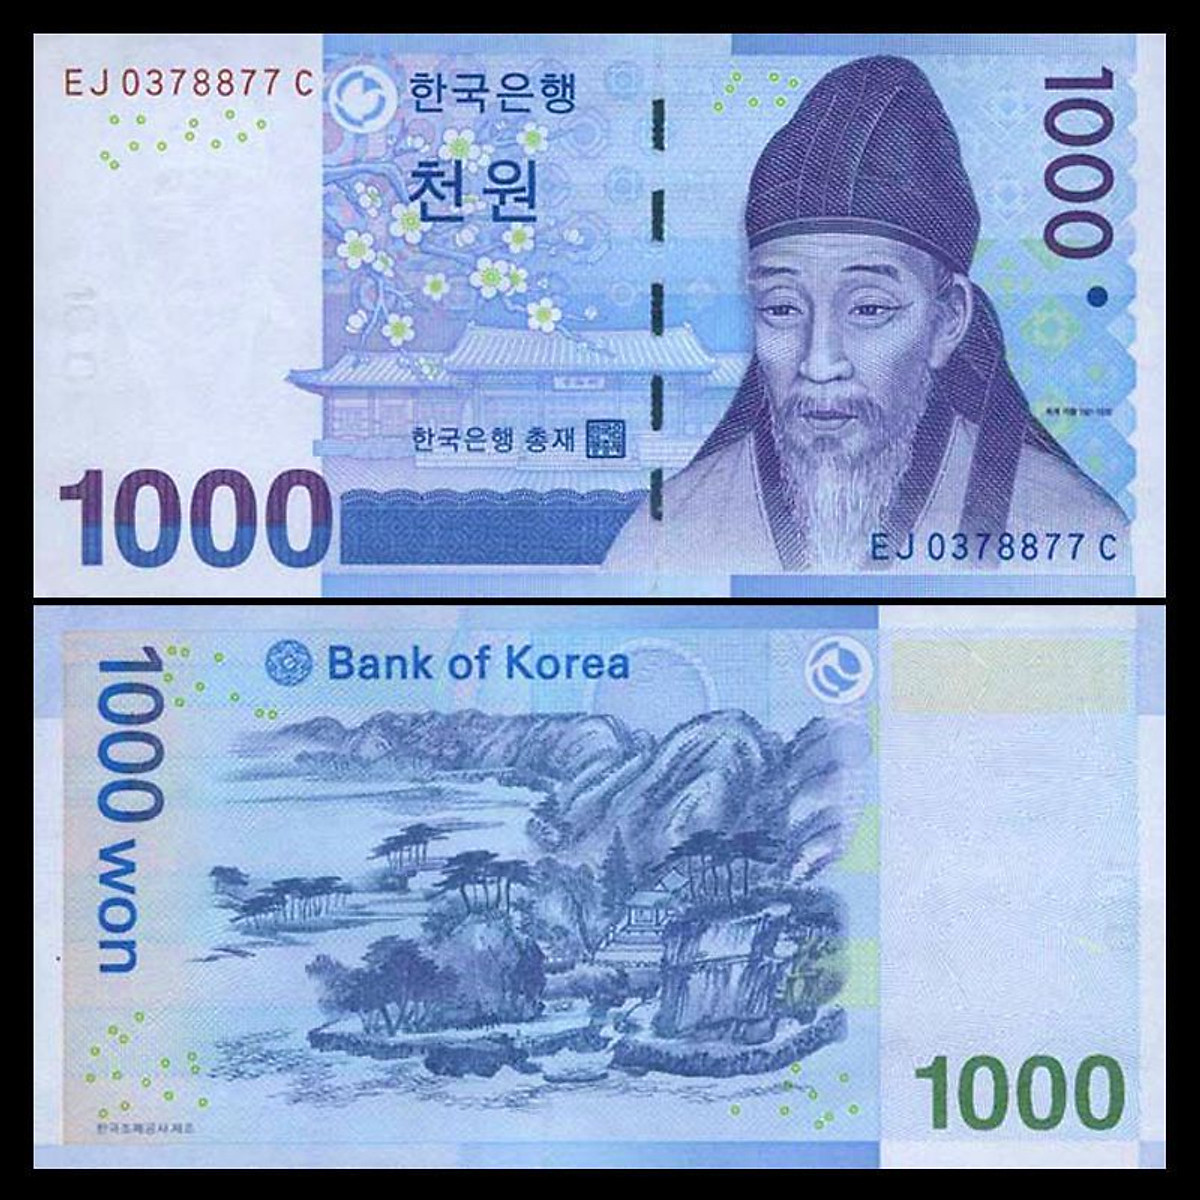 Tiền Đại Hàn Dân Quốc 1000 won sưu tầm - Tiền mới keng 100% - Tặng túi nilon bảo quản